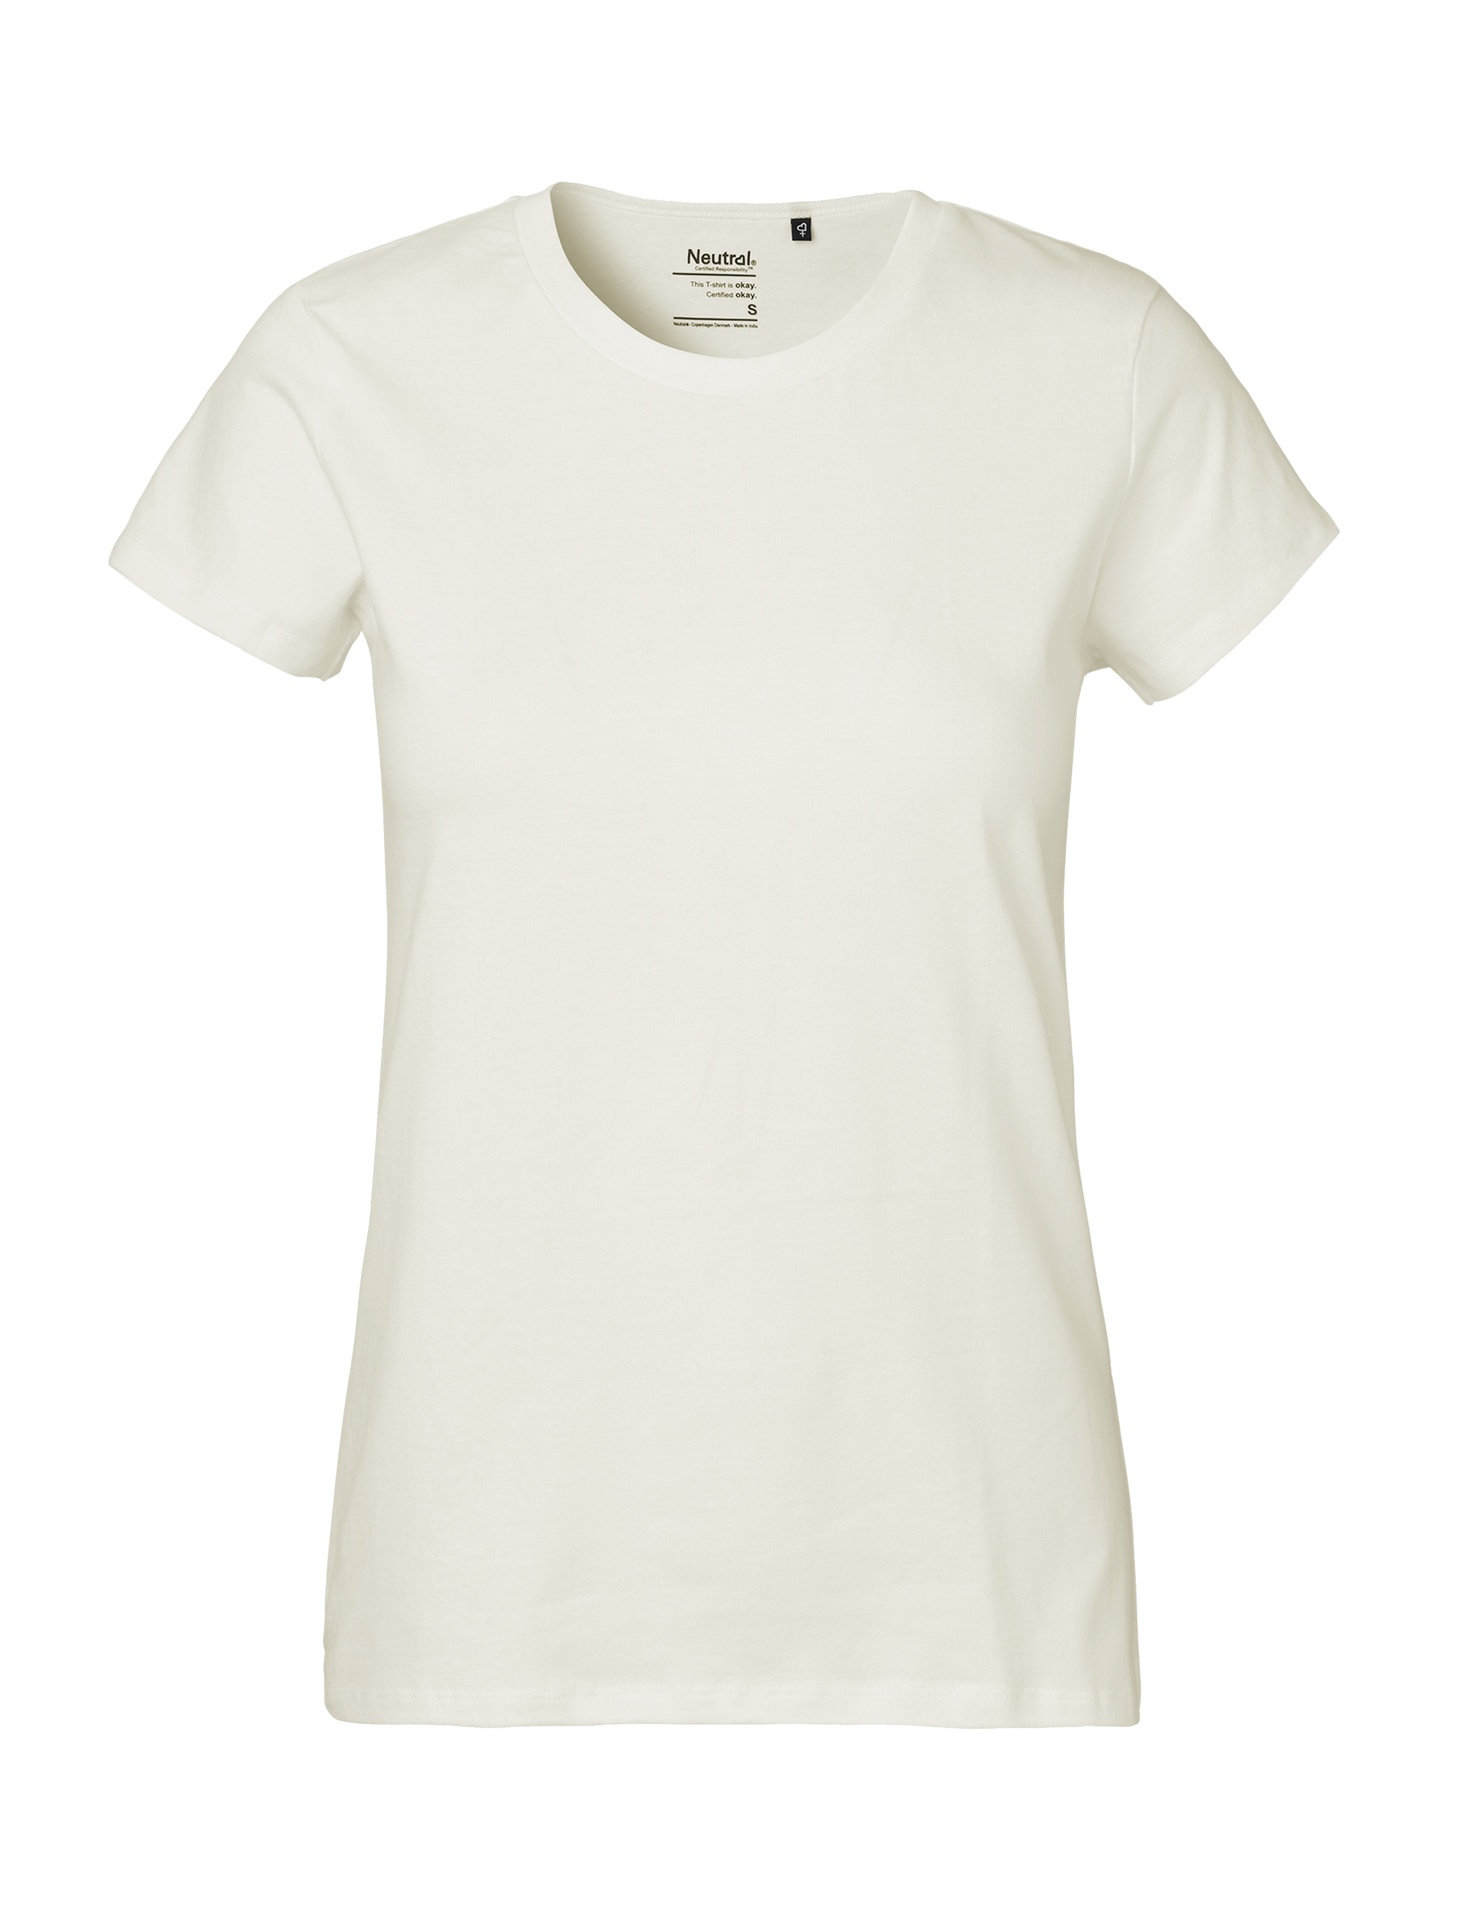 [PR/03986] Ladies Classic T-Shirt (Nature 00, S)